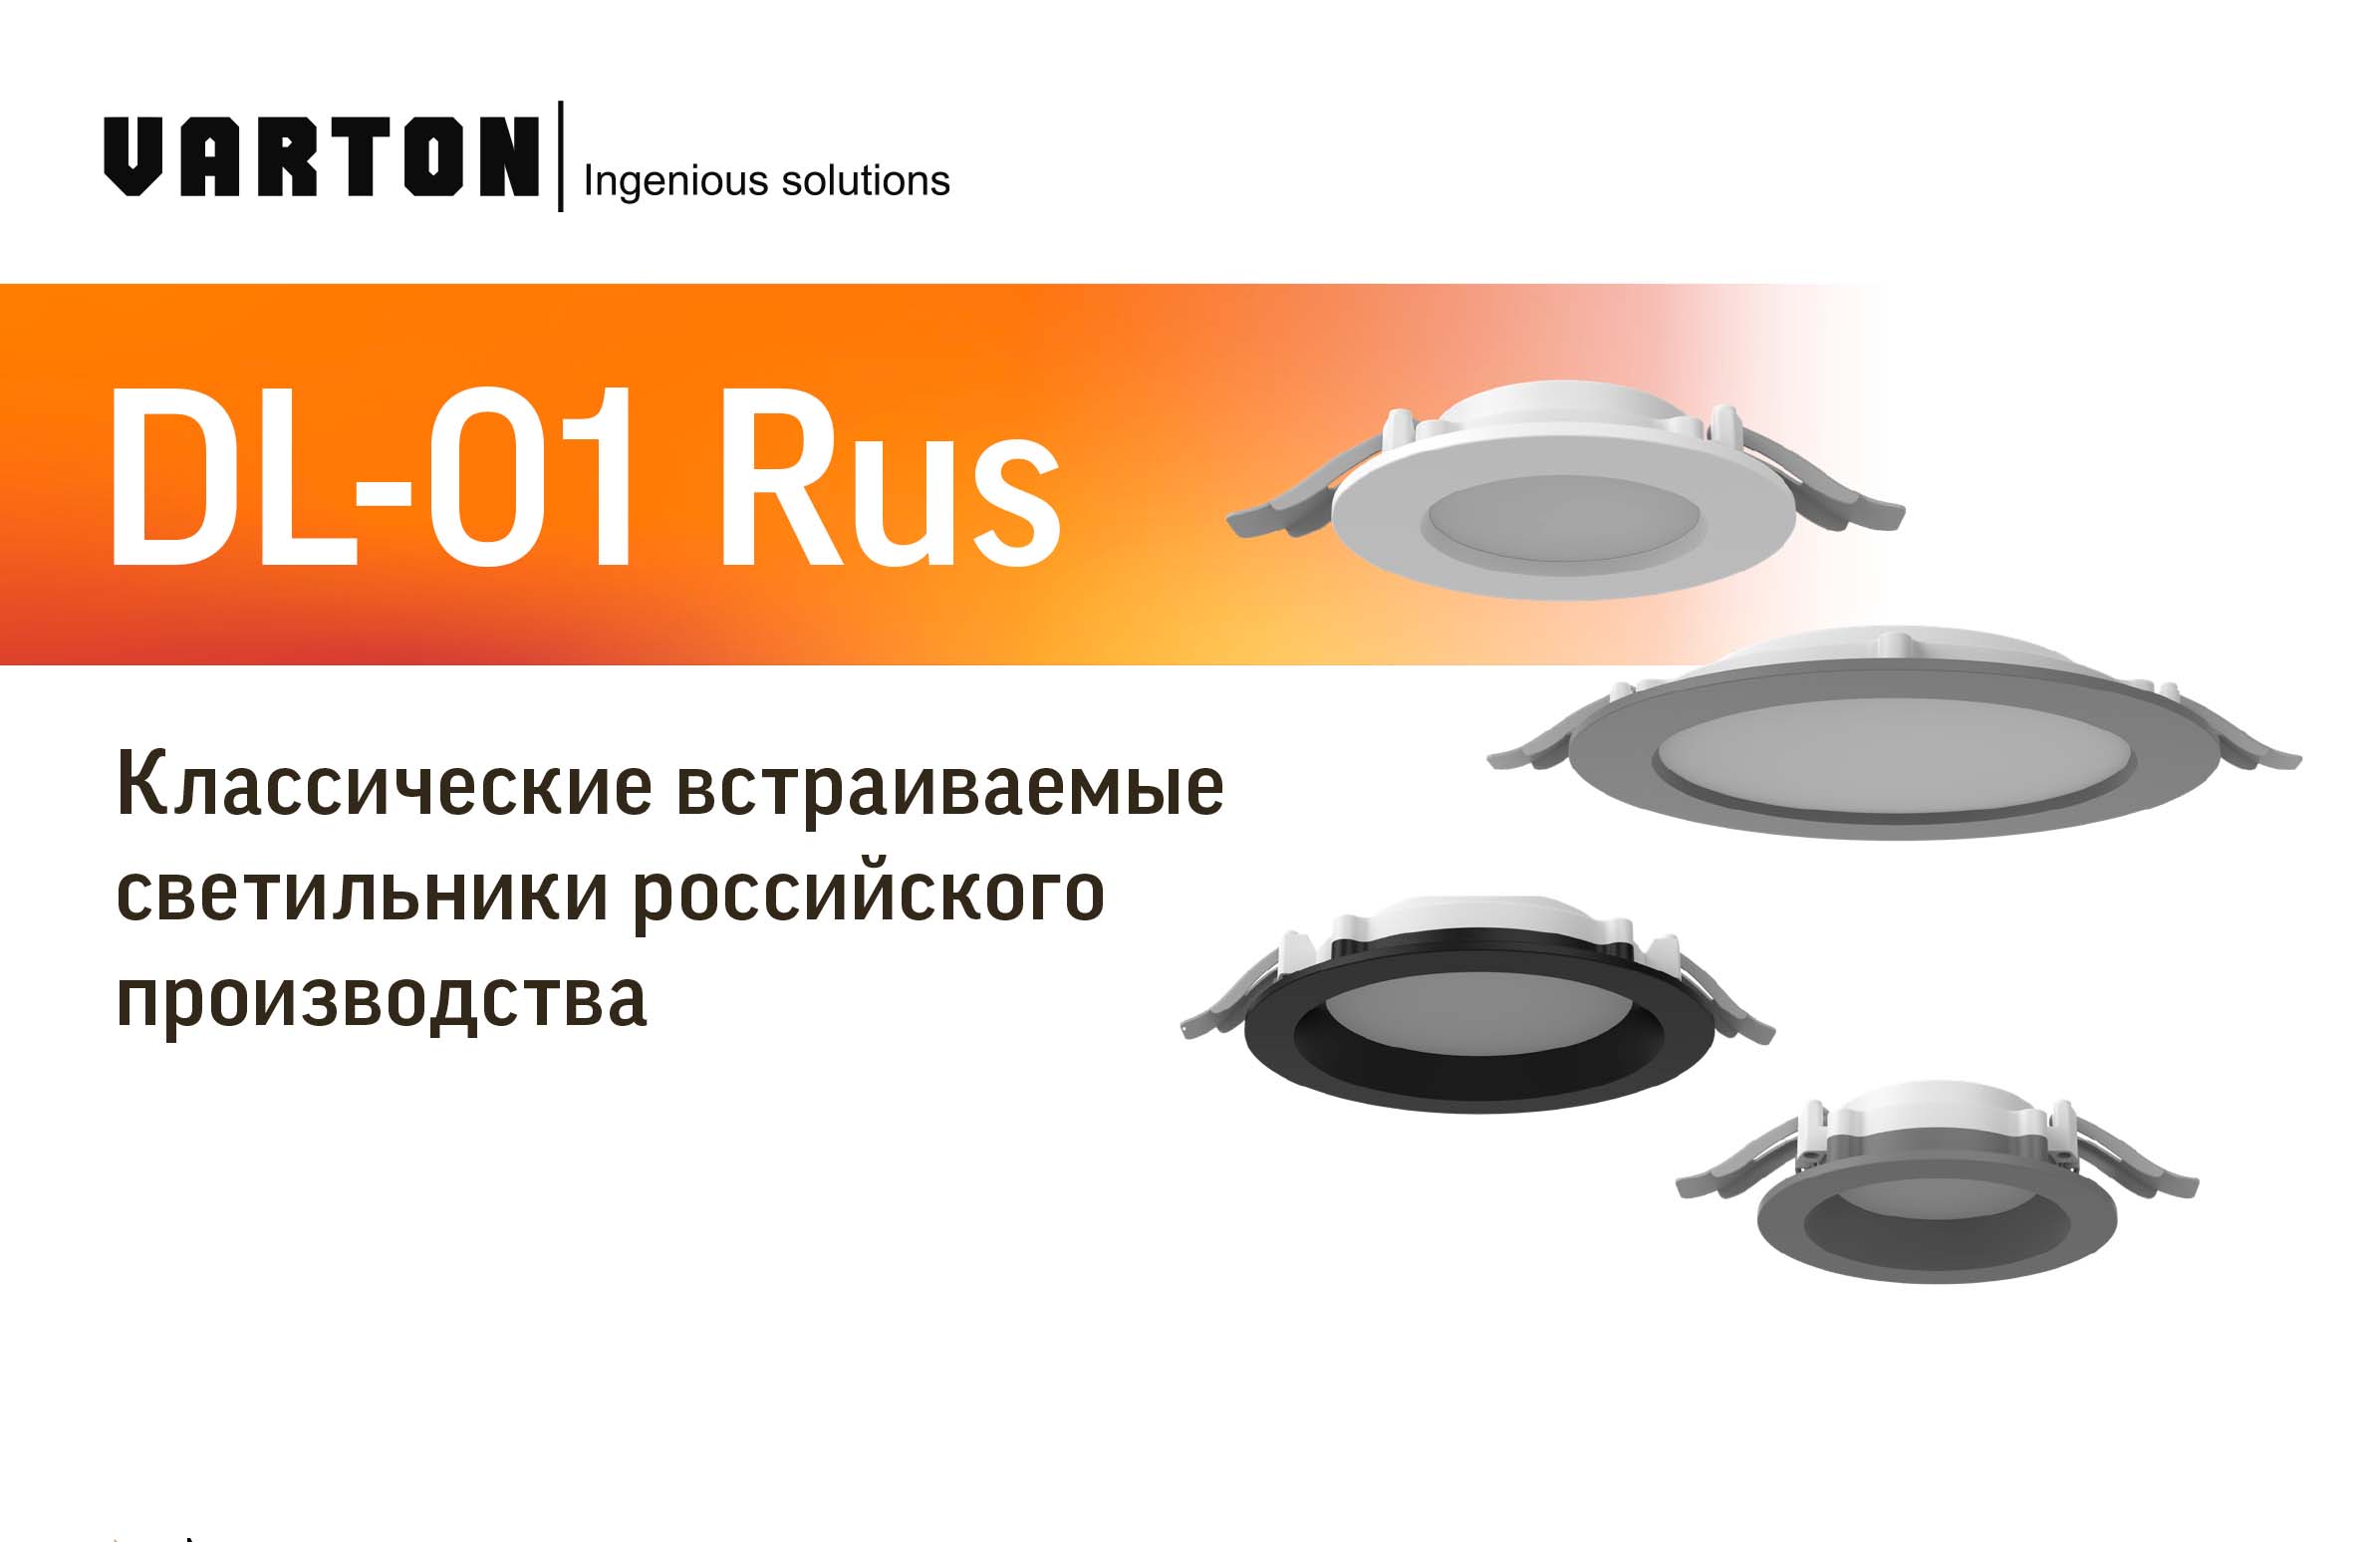 Классические встраиваемые светильники российского производства DL-01 RUS